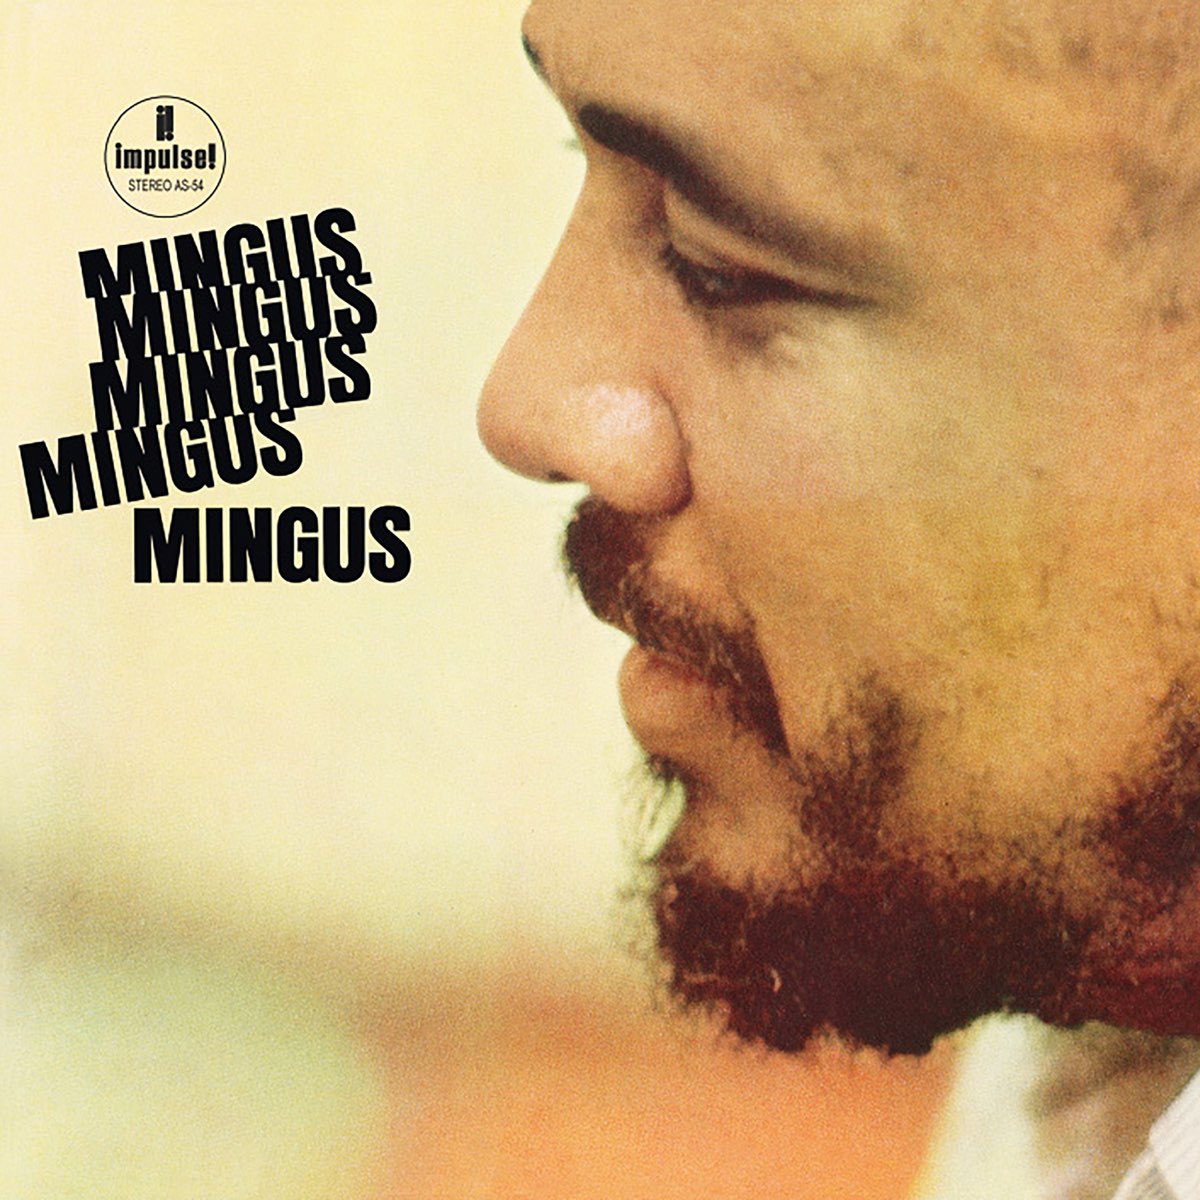 Mingus, Mingus, Mingus, Mingus, Mingus - Album by Charles Mingus 